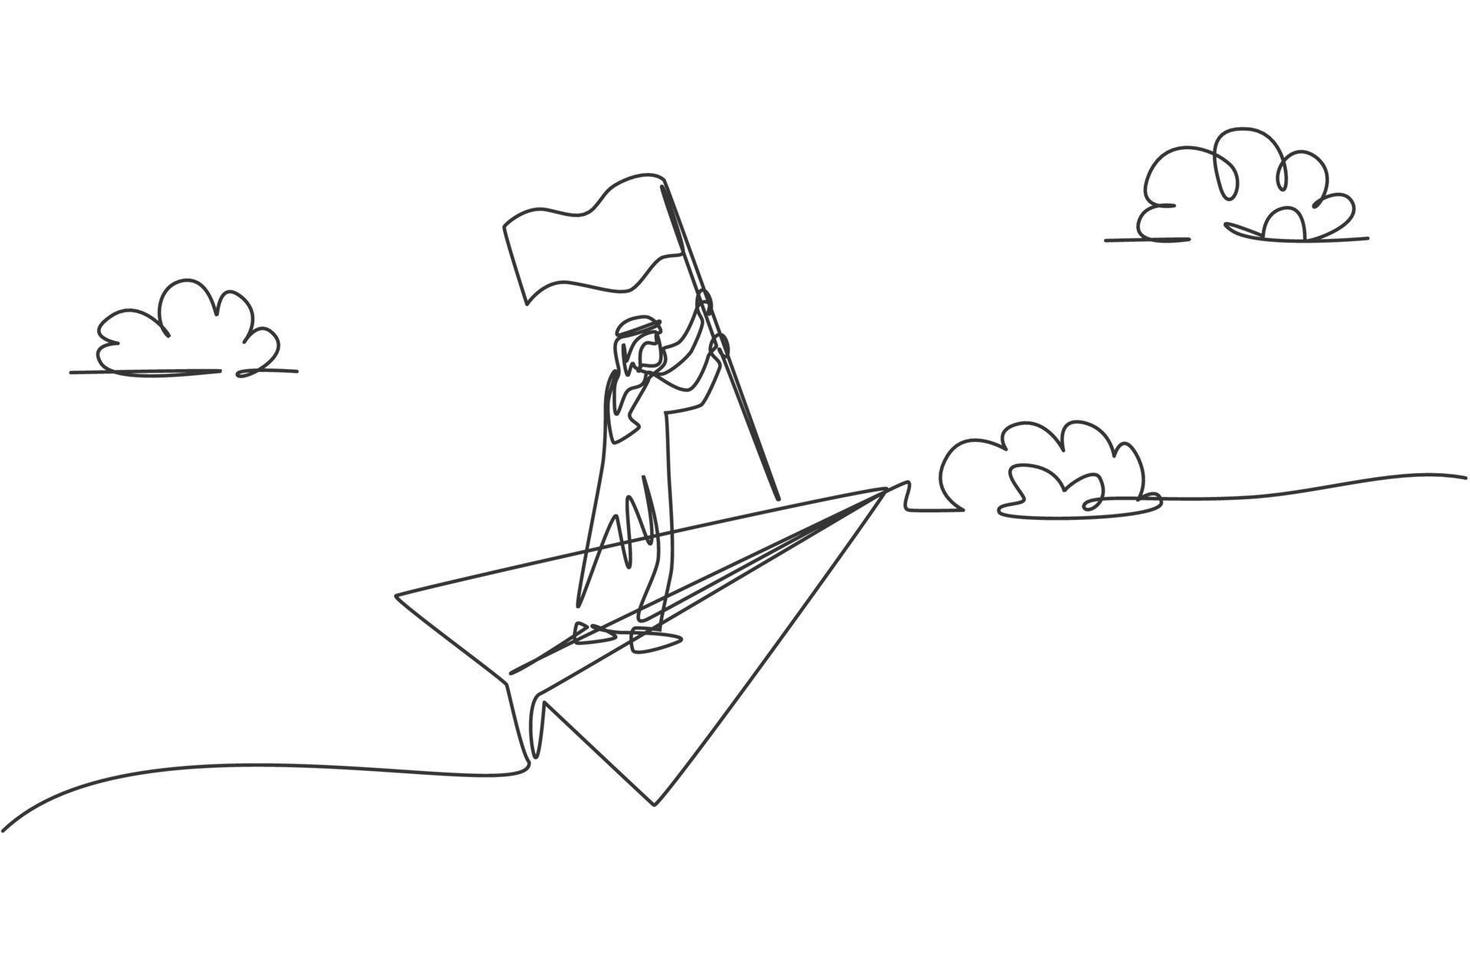 dibujo de línea continua única de un joven empresario árabe sosteniendo la bandera ganadora mientras volaba con un avión de papel. concepto de metáfora del minimalismo. Ilustración de vector de diseño gráfico de dibujo de una línea dinámica